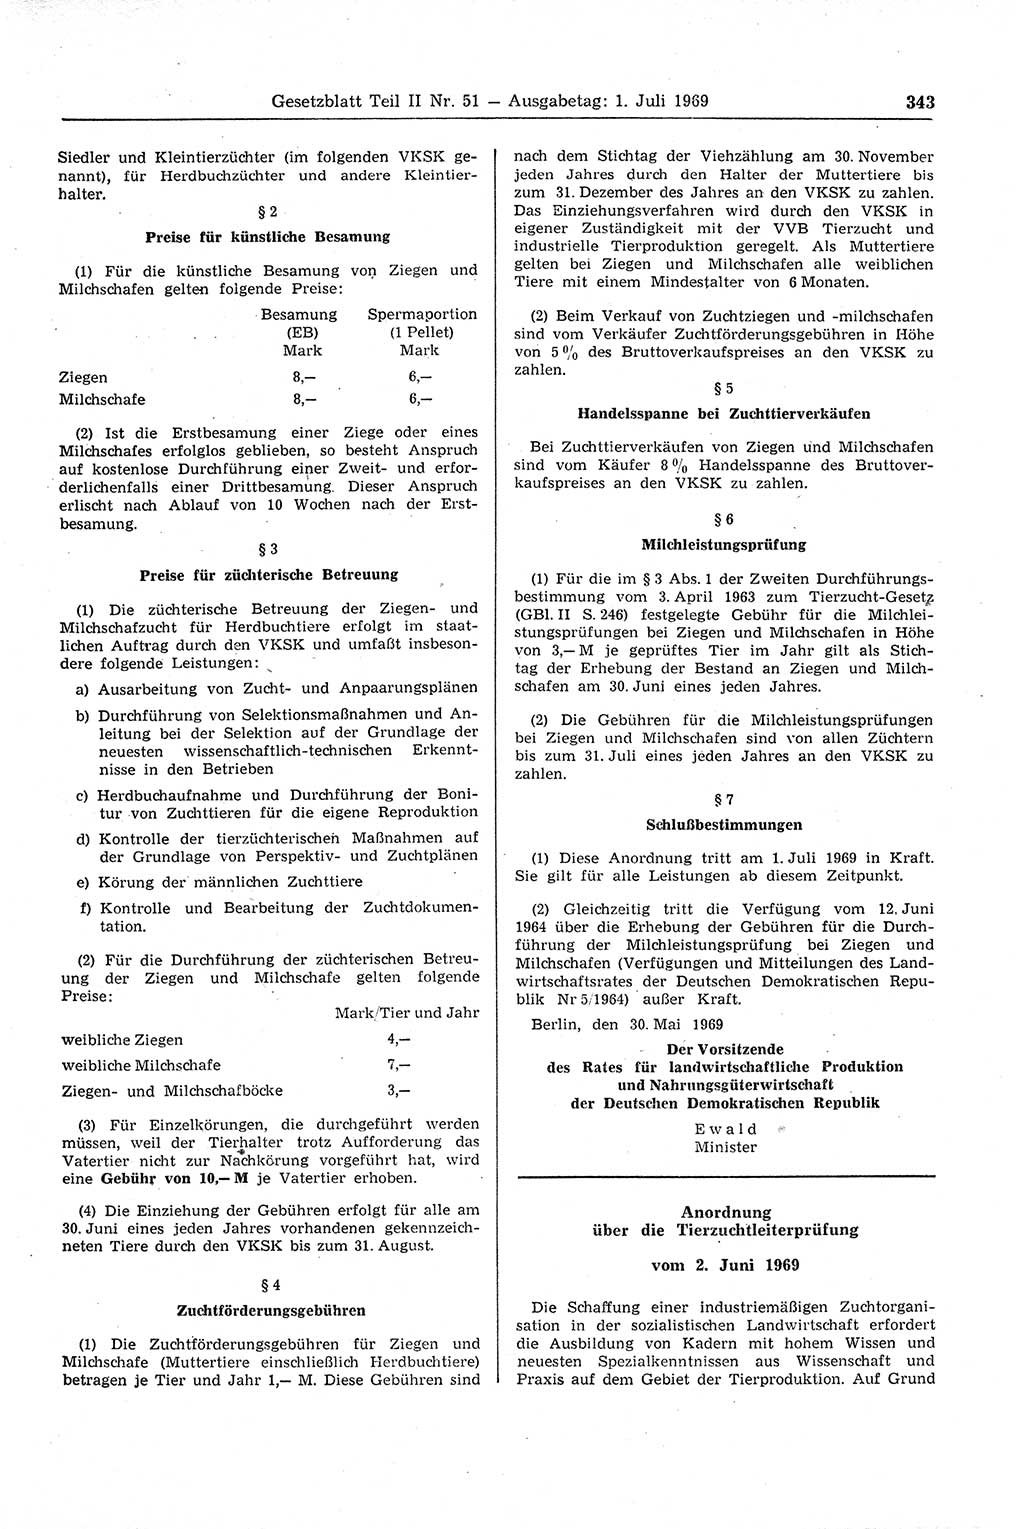 Gesetzblatt (GBl.) der Deutschen Demokratischen Republik (DDR) Teil ⅠⅠ 1969, Seite 343 (GBl. DDR ⅠⅠ 1969, S. 343)